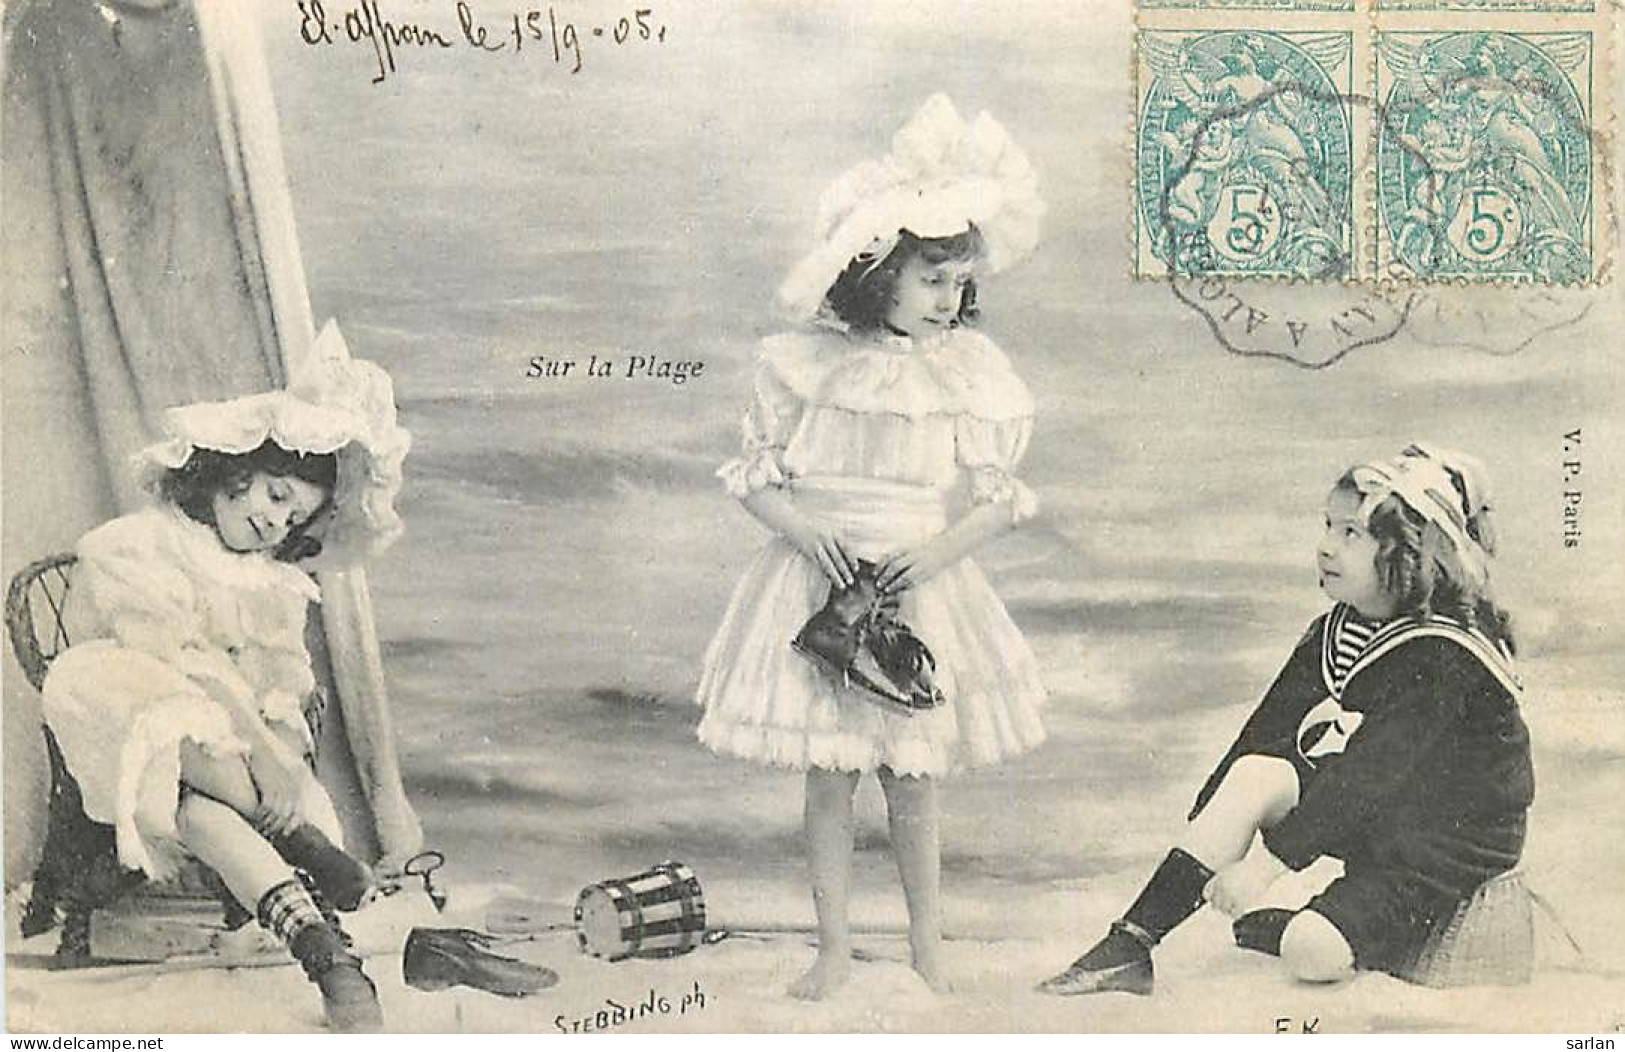 Série de 6 cartes , Sur la plage ( fillette en tenue de bain ) , * 502 04